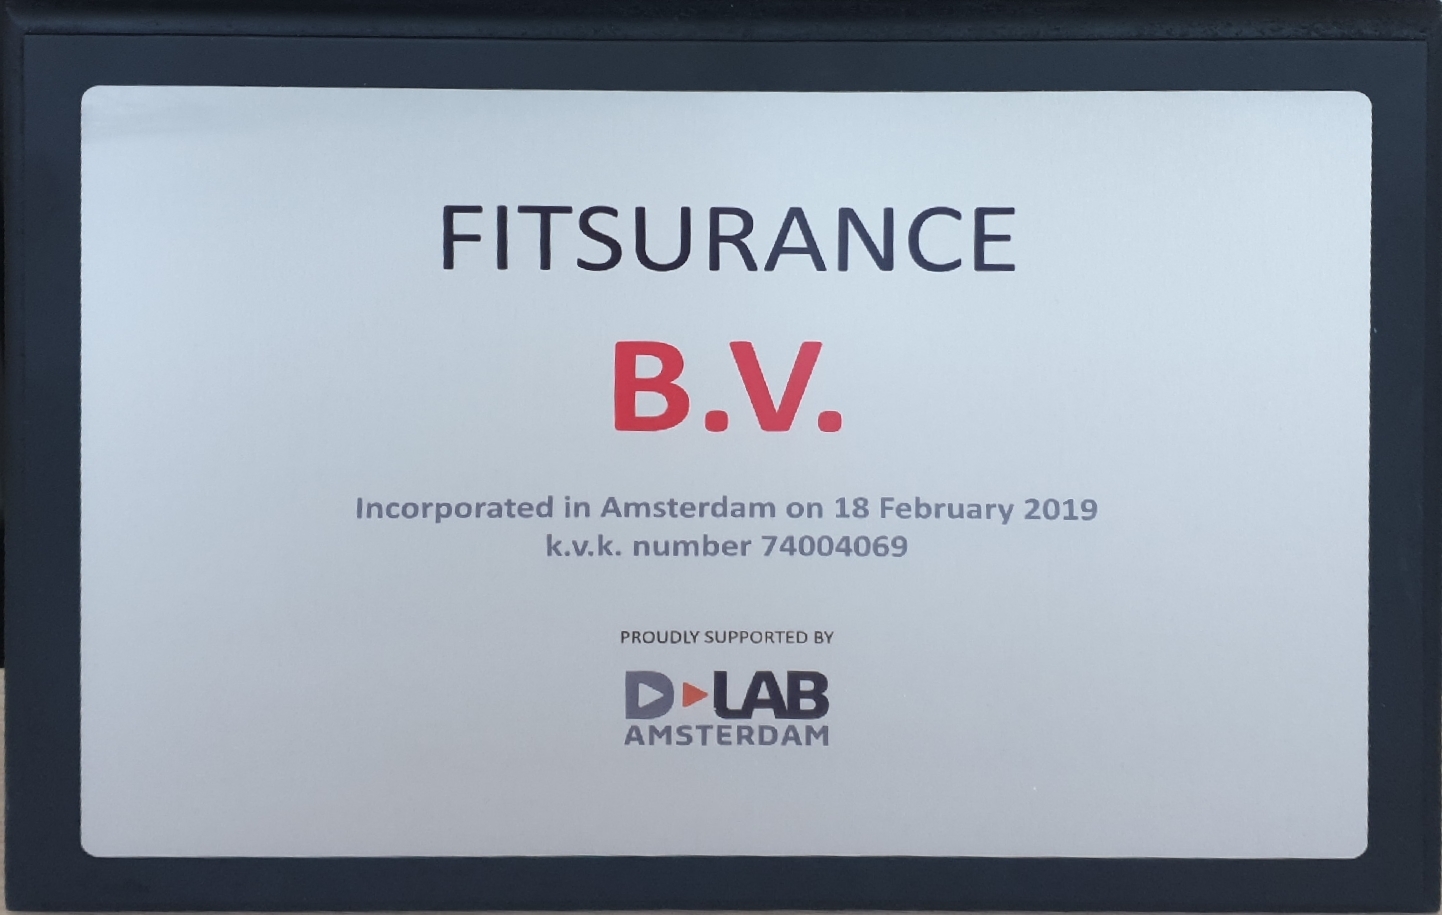 Fitsurance-plaque-BV-D-Lab